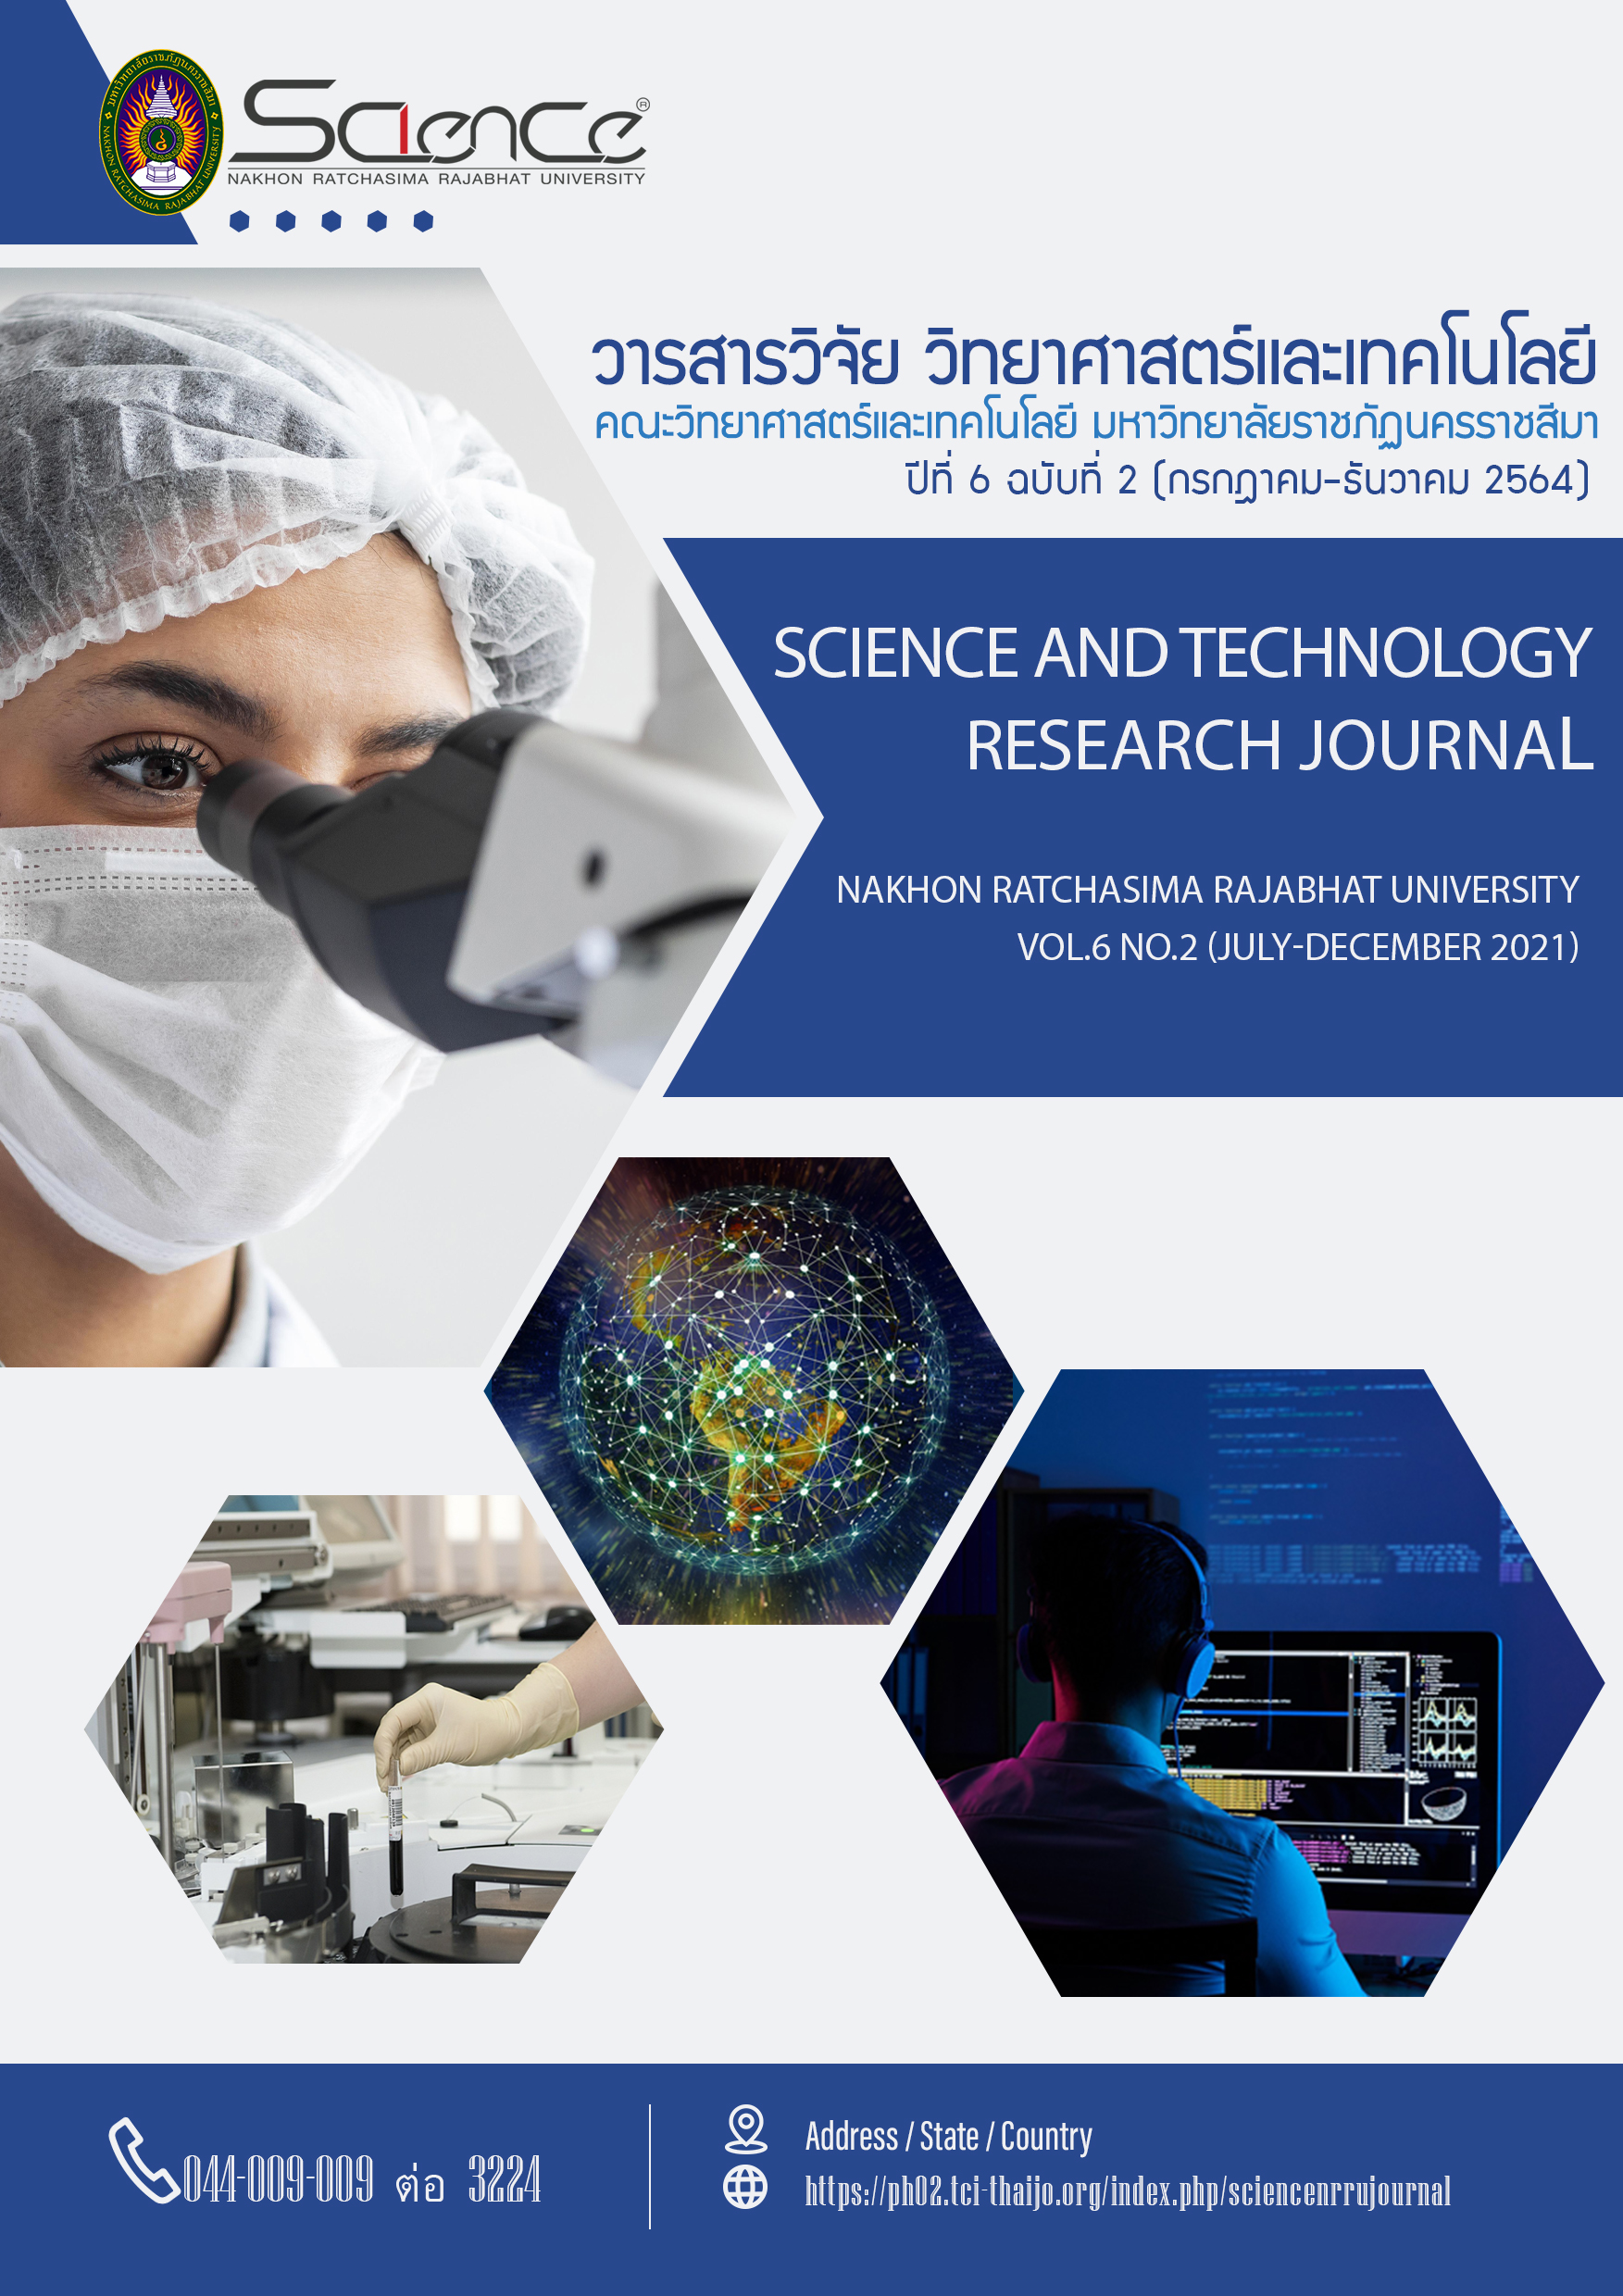 					ดู ปีที่ 6 ฉบับที่ 2 (2021): กรกฎาคม - ธันวาคม : วารสารวิจัยวิทยาศาสตร์และเทคโนโลยี มหาวิทยาลัยราชภัฏนครราชสีมา
				